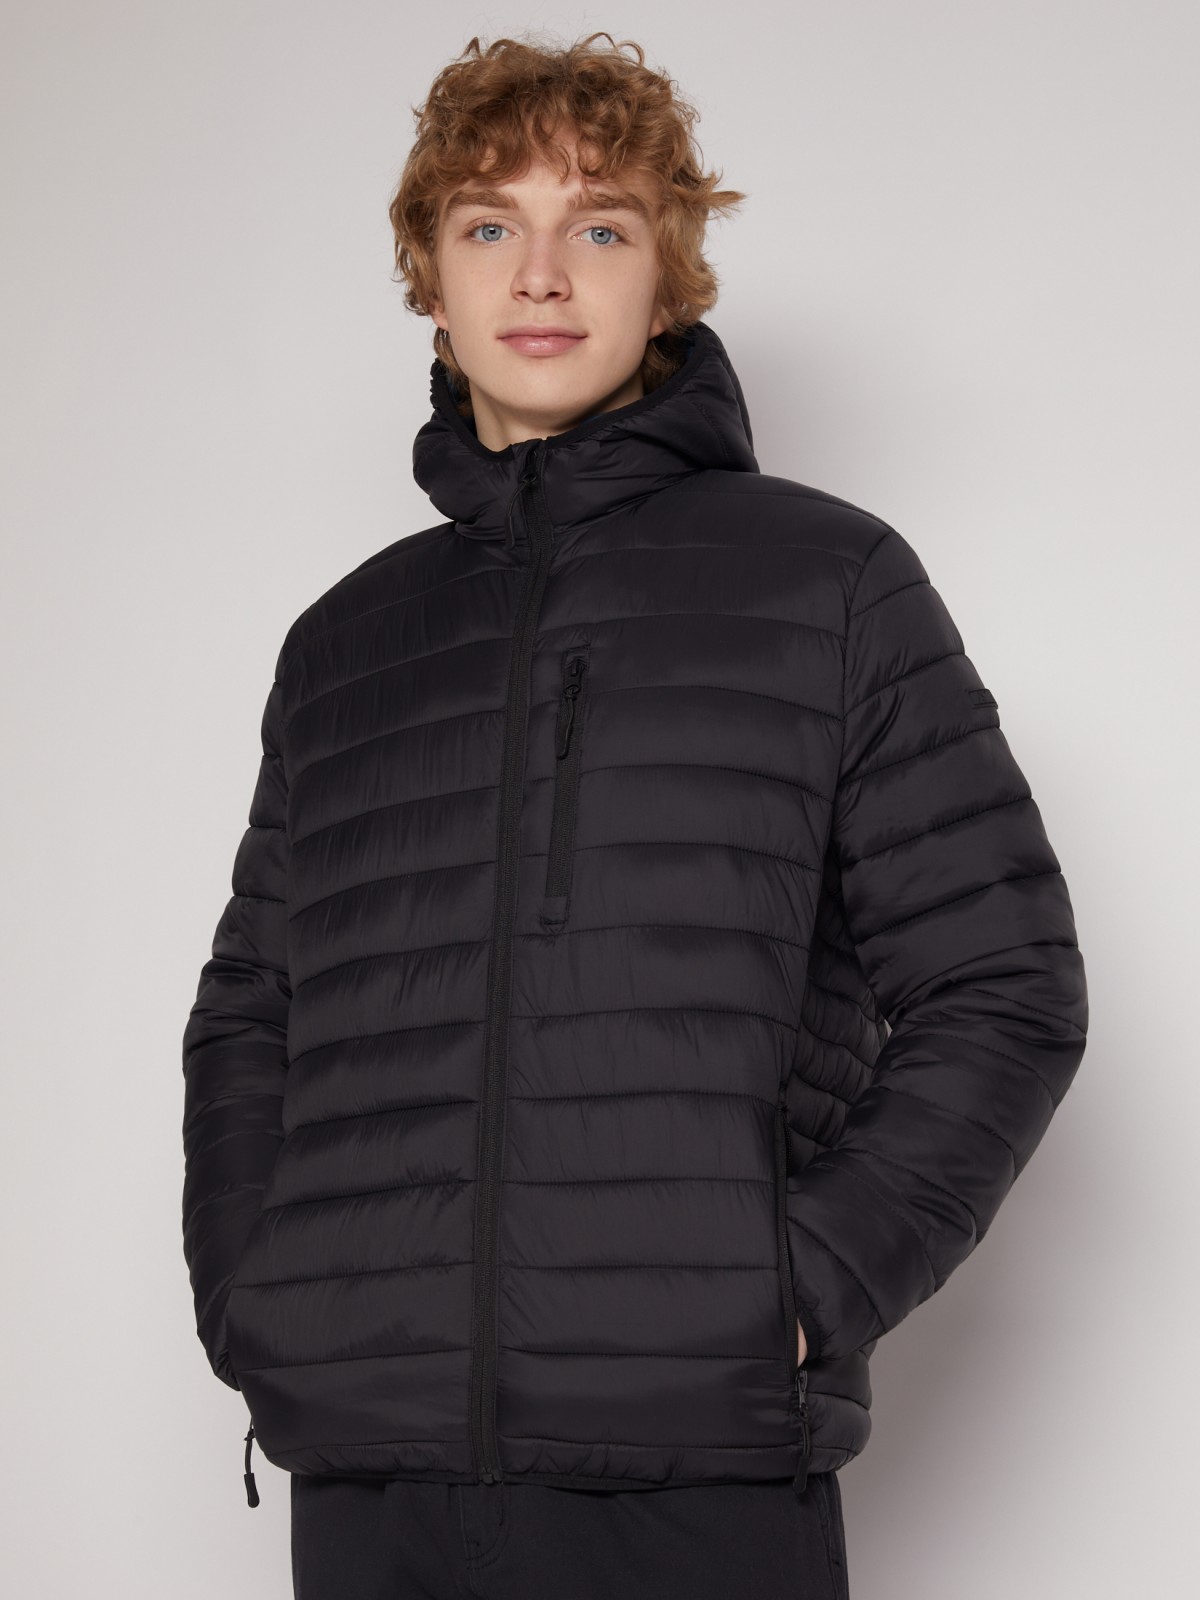 Утеплённая стёганая куртка с капюшоном zolla 013125114134, цвет черный, размер S - фото 3